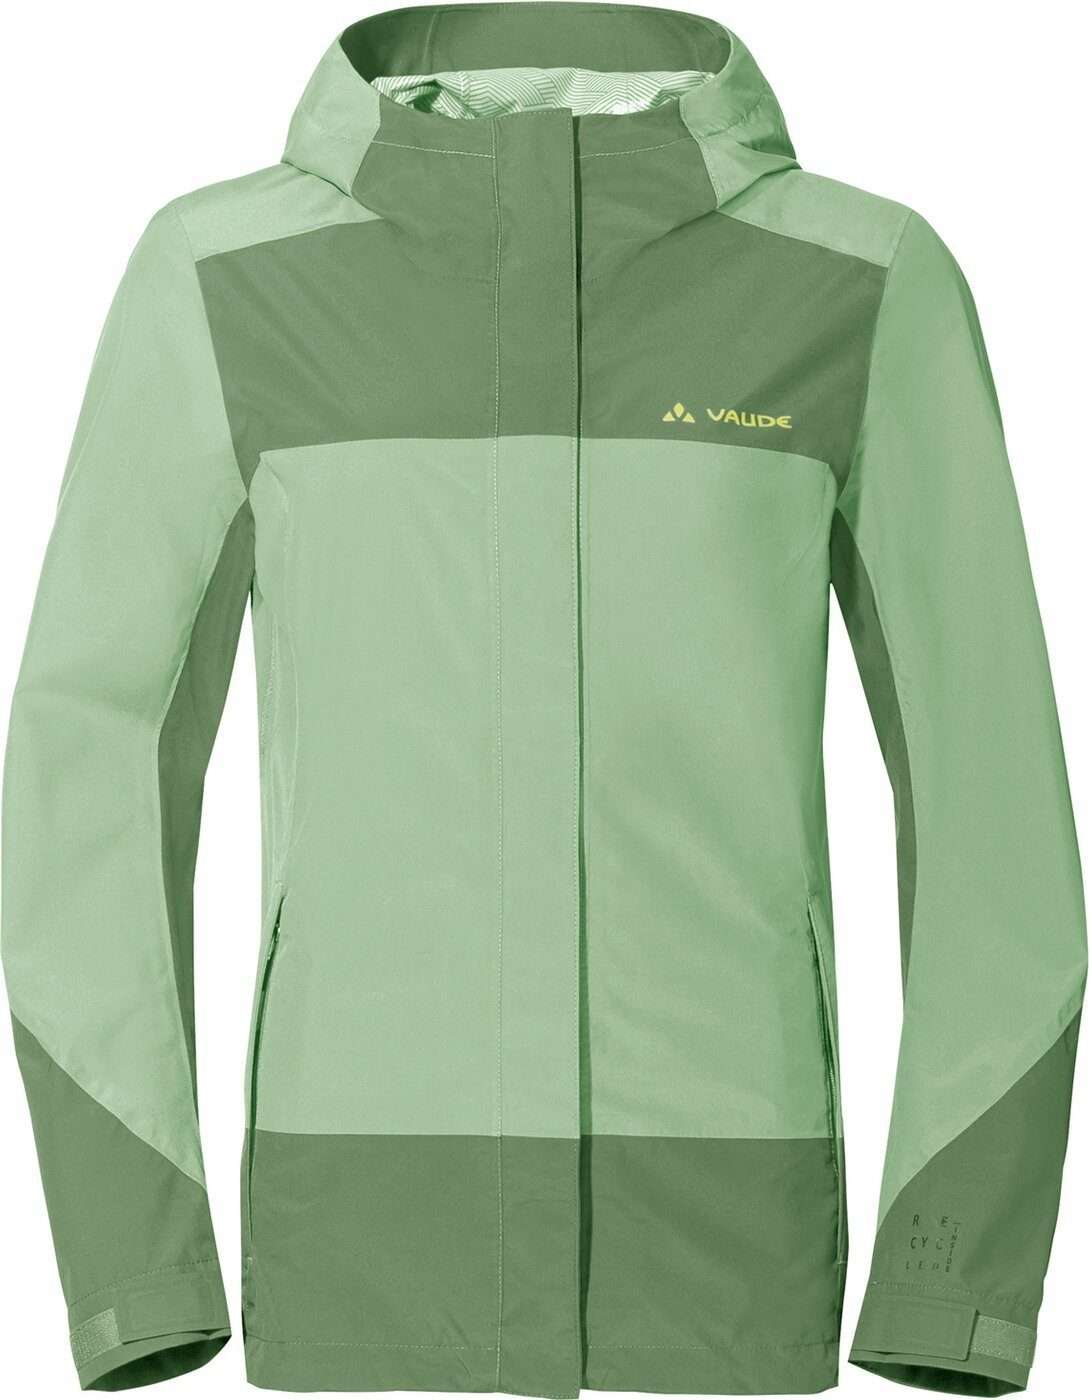 Функциональная куртка 3-в-1 зеленая (1 шт.)